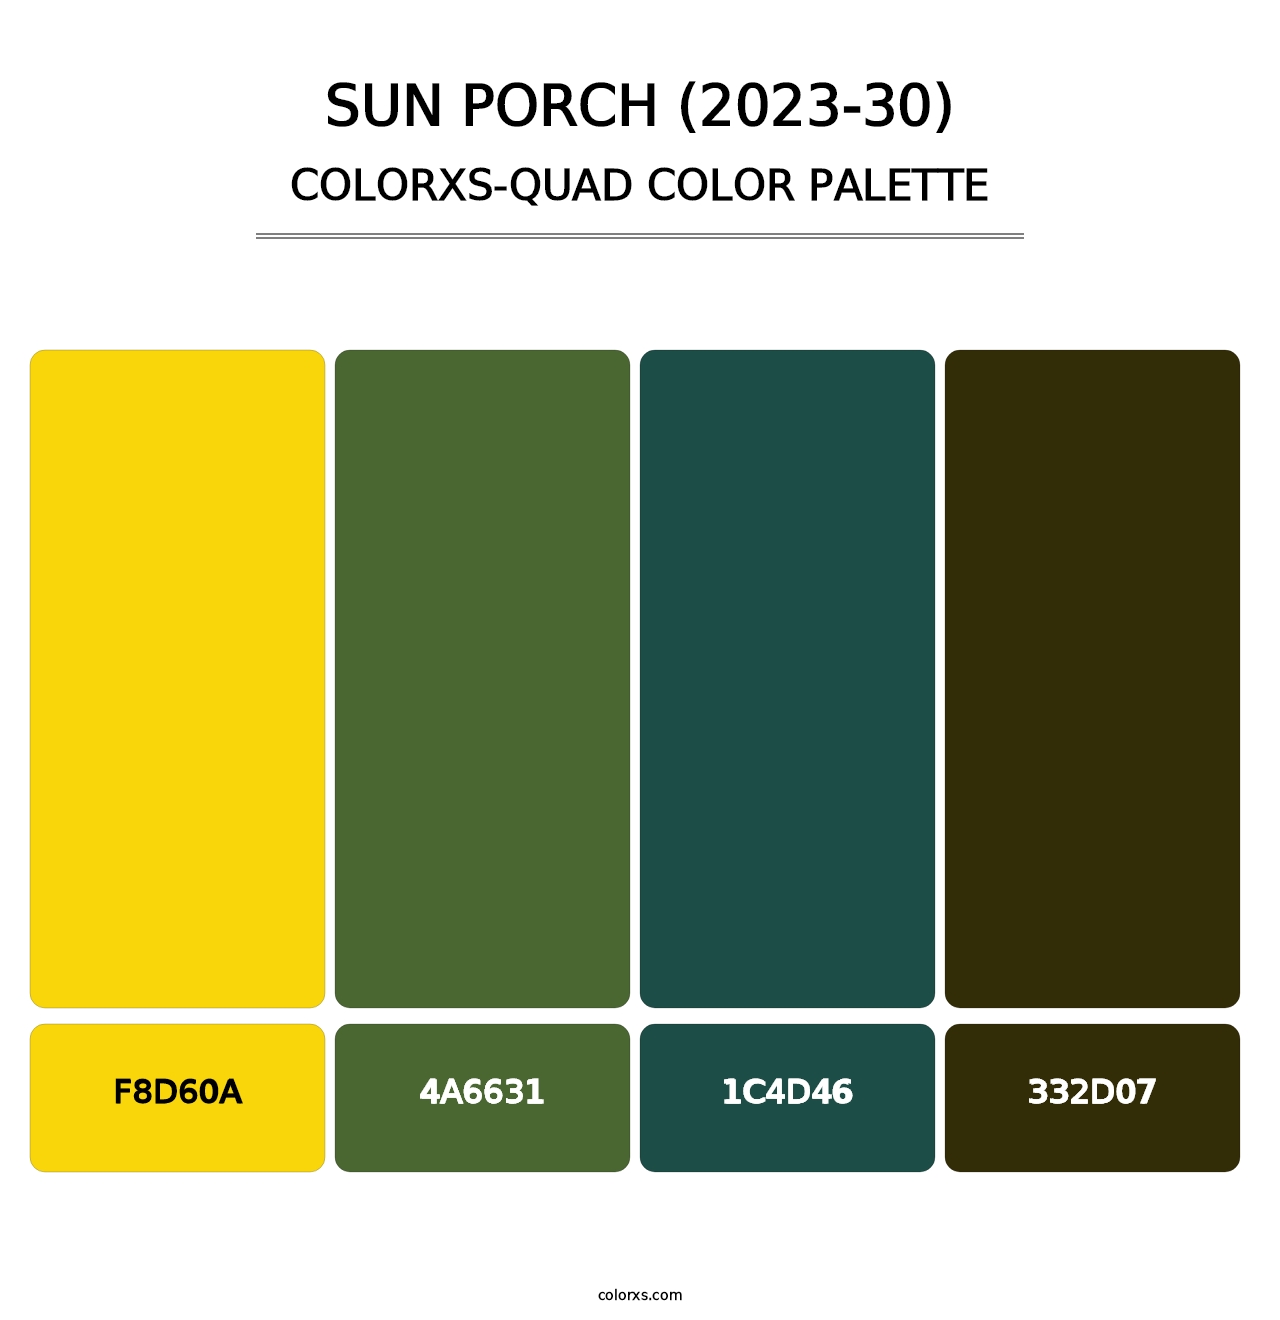 Sun Porch (2023-30) - Colorxs Quad Palette